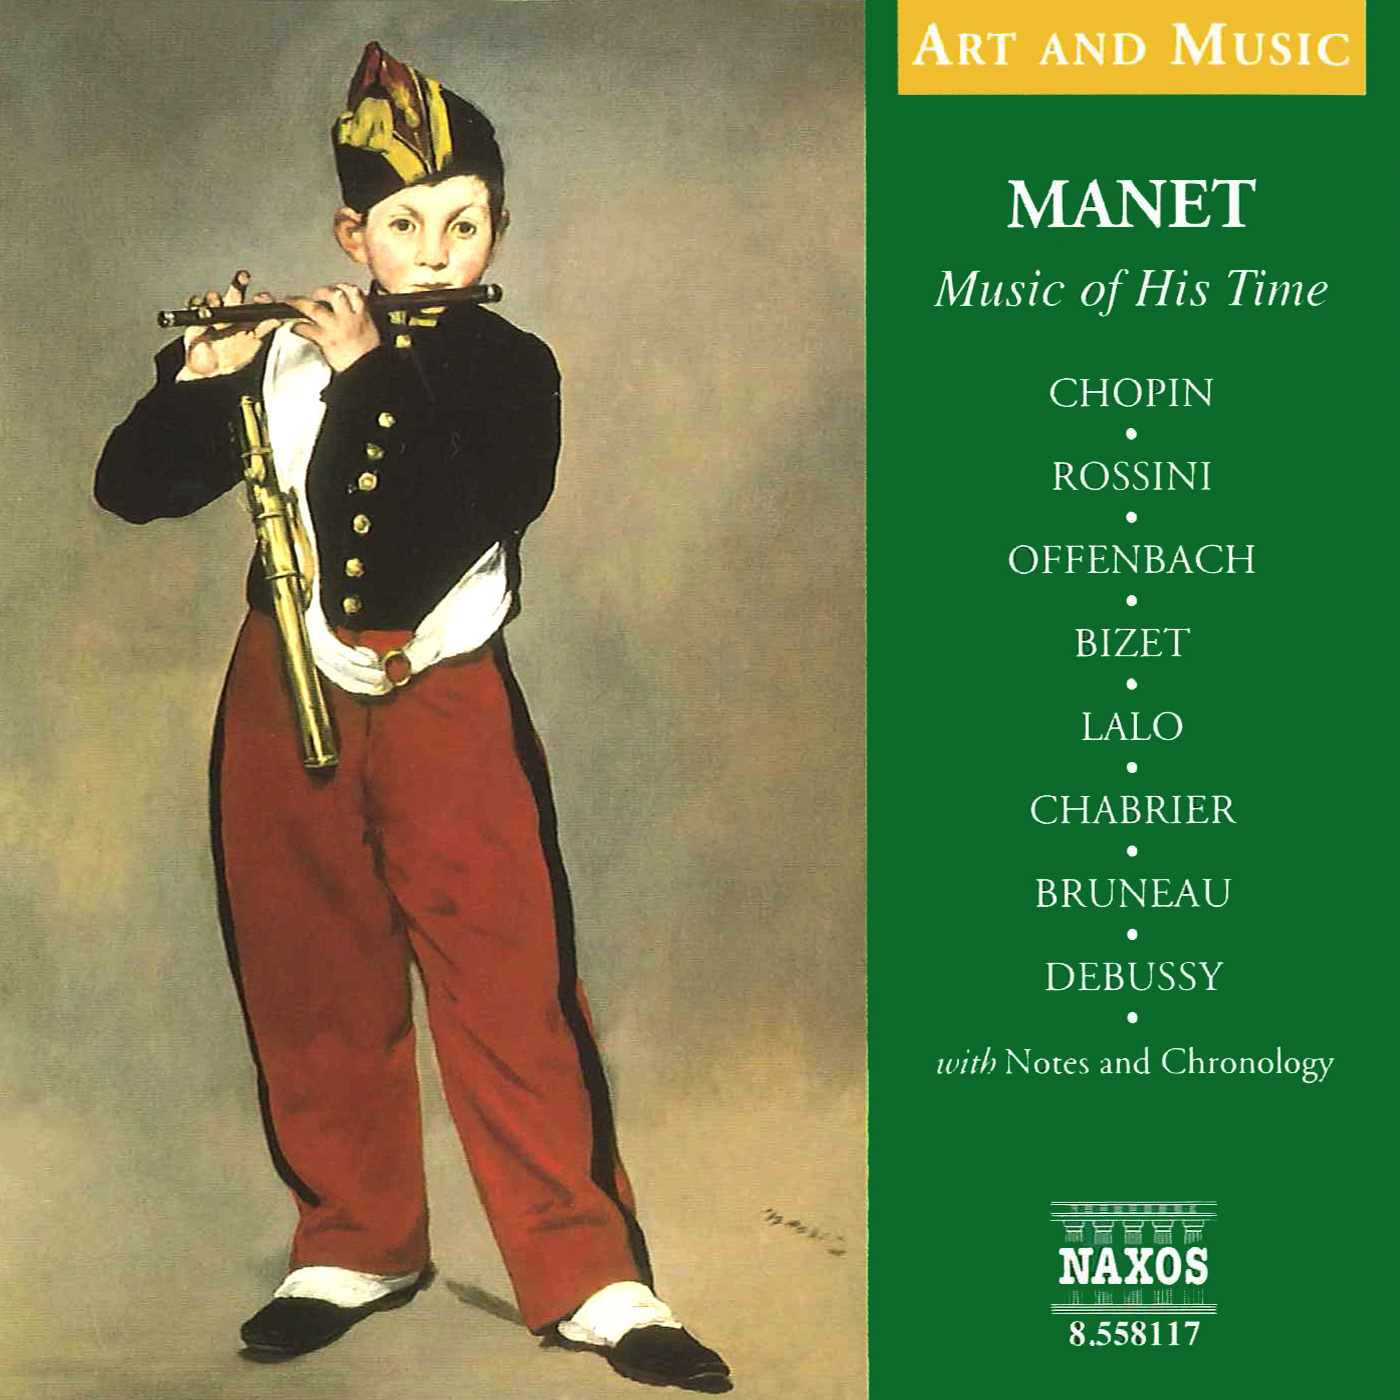 Waltz No. 2 in A-Flat Major, Op. 34, No. 1, "Valse brillante":Grande Valse brillante in A-Flat Major, Op. 34, No. 1